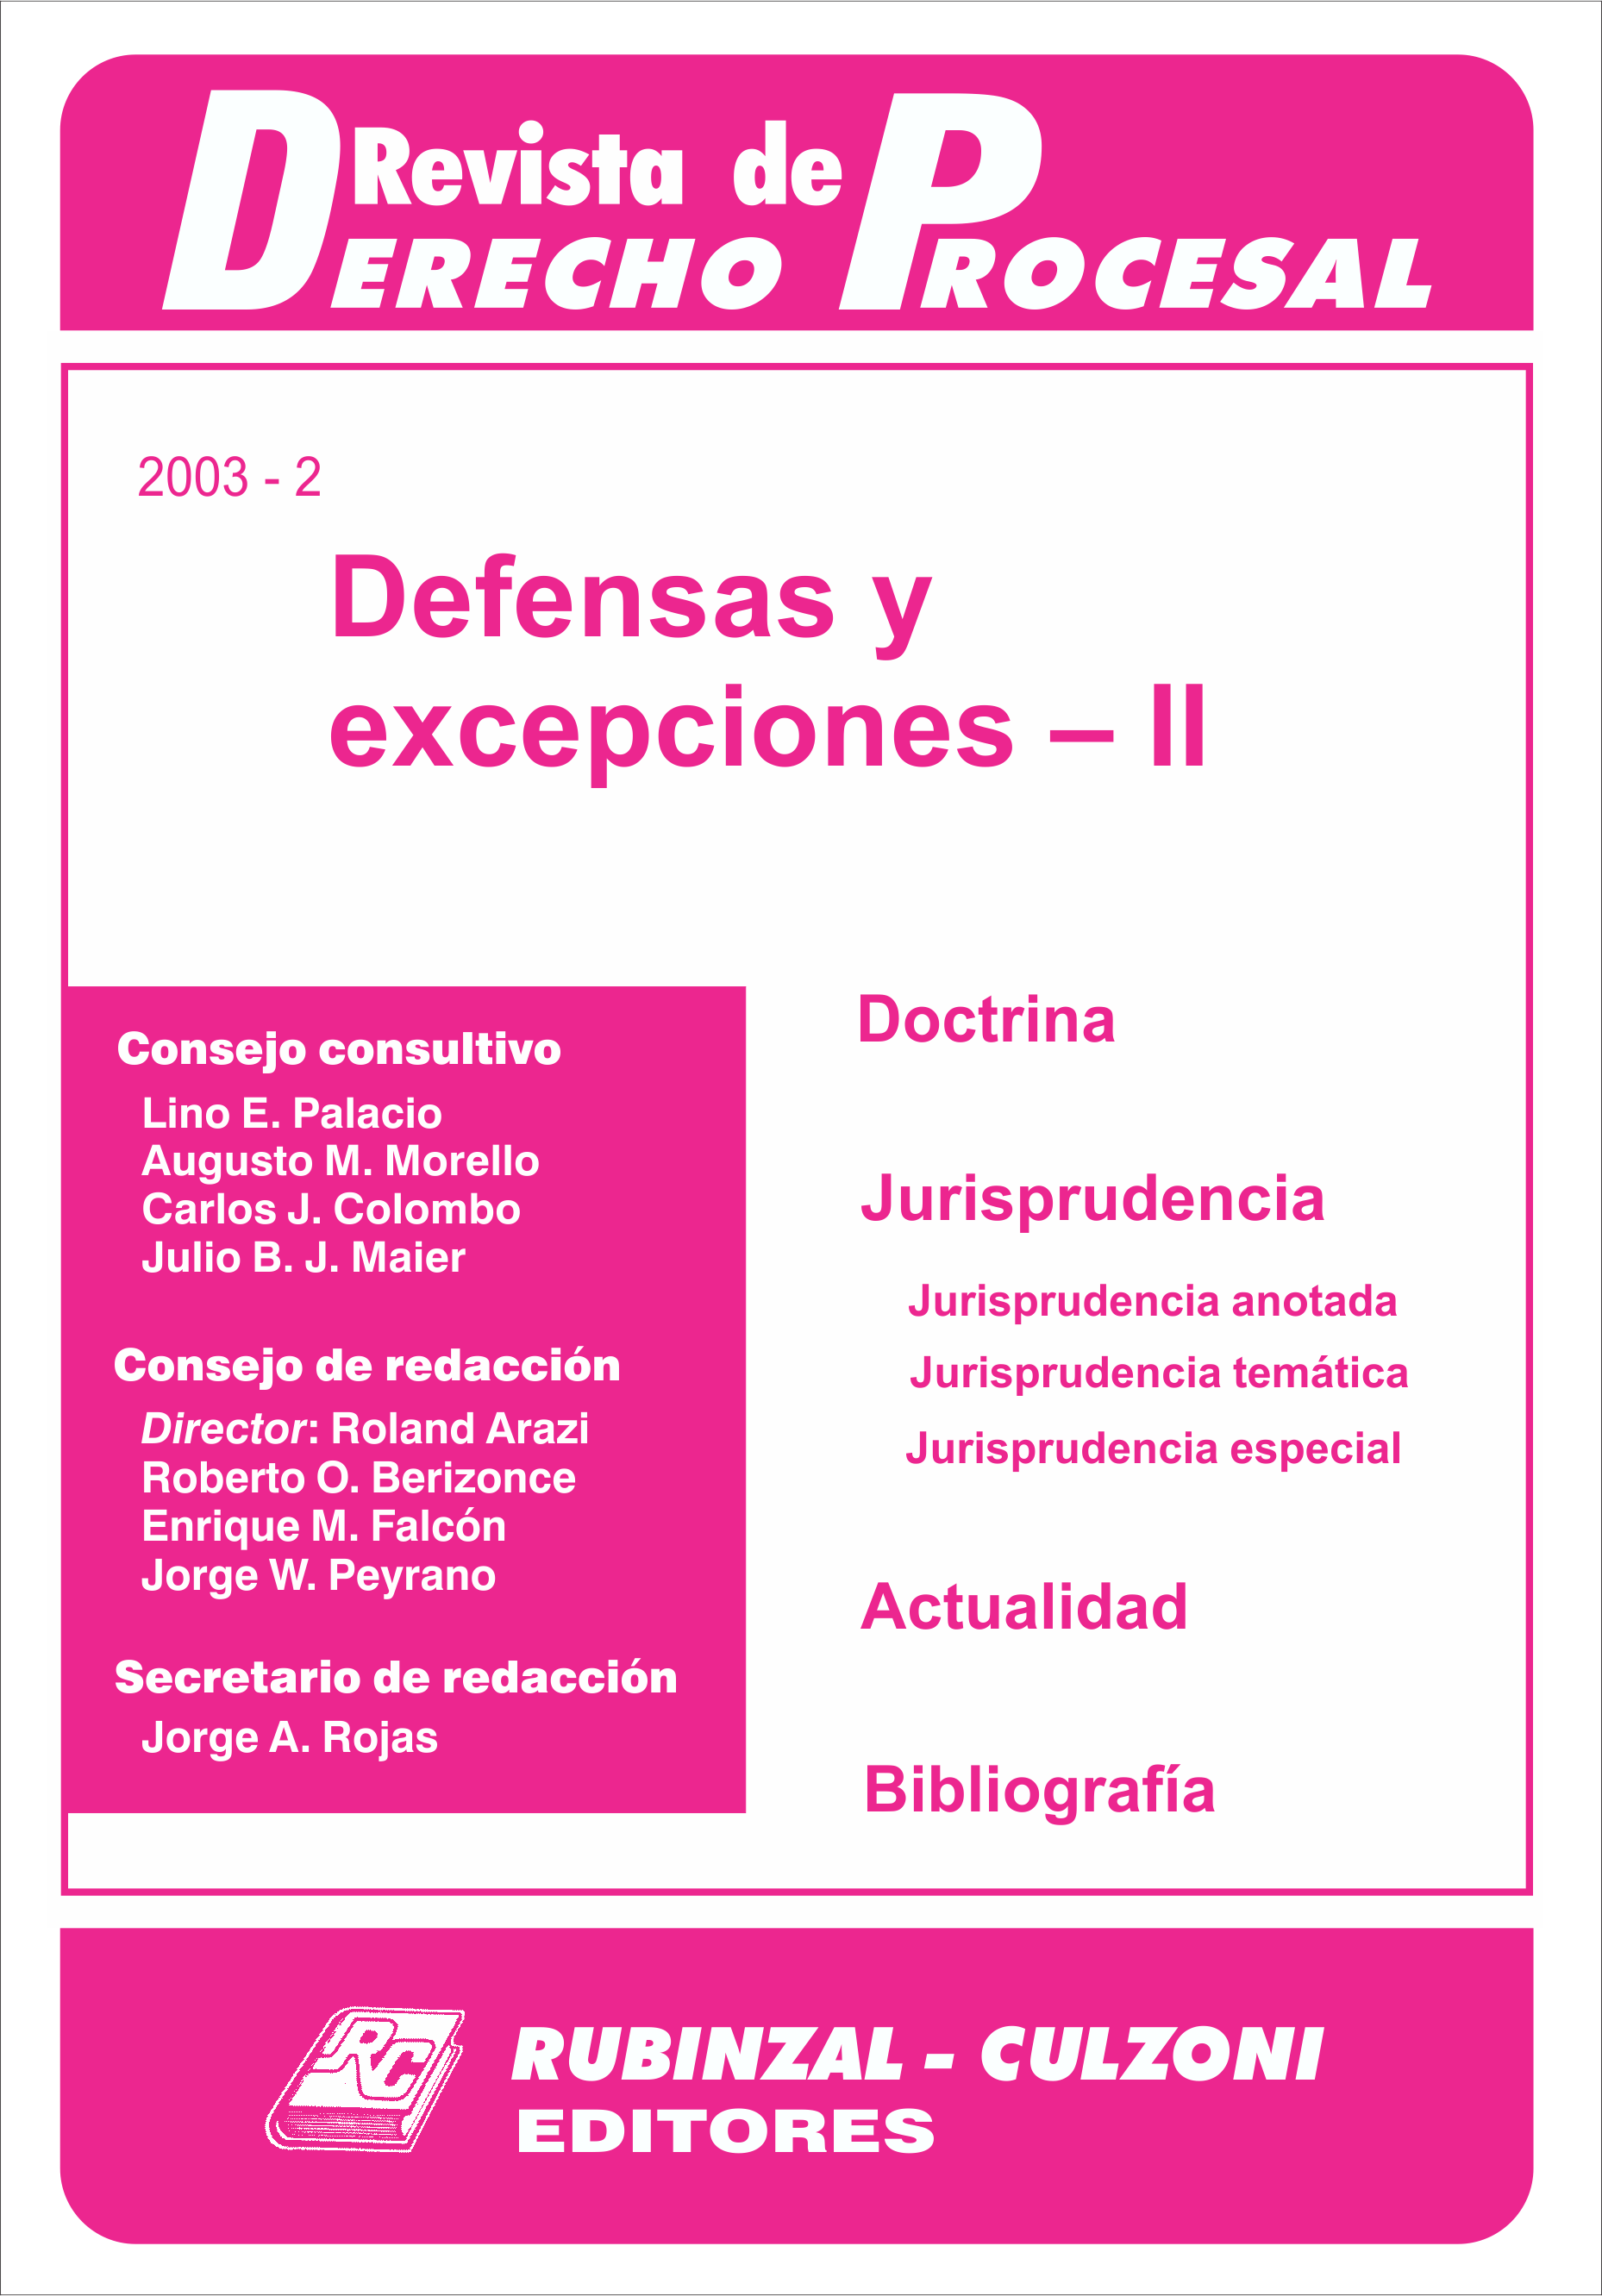 Revista de Derecho Procesal - Defensas y excepciones - II